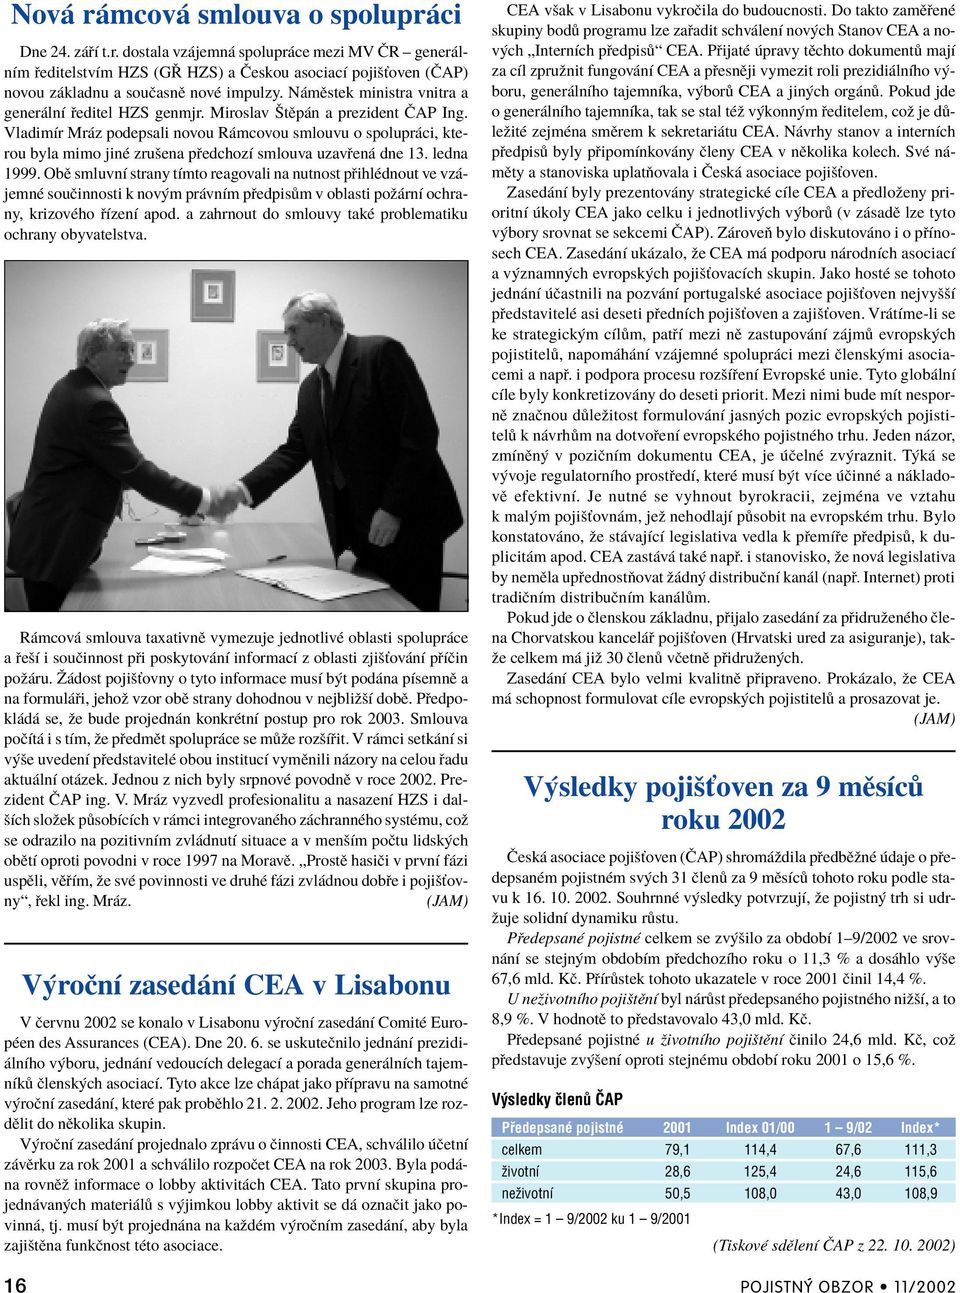 VladimÌr Mr z podepsali novou R mcovou smlouvu o spolupr ci, kterou byla mimo jinè zruöena p edchozì smlouva uzav en dne 13. ledna 1999.